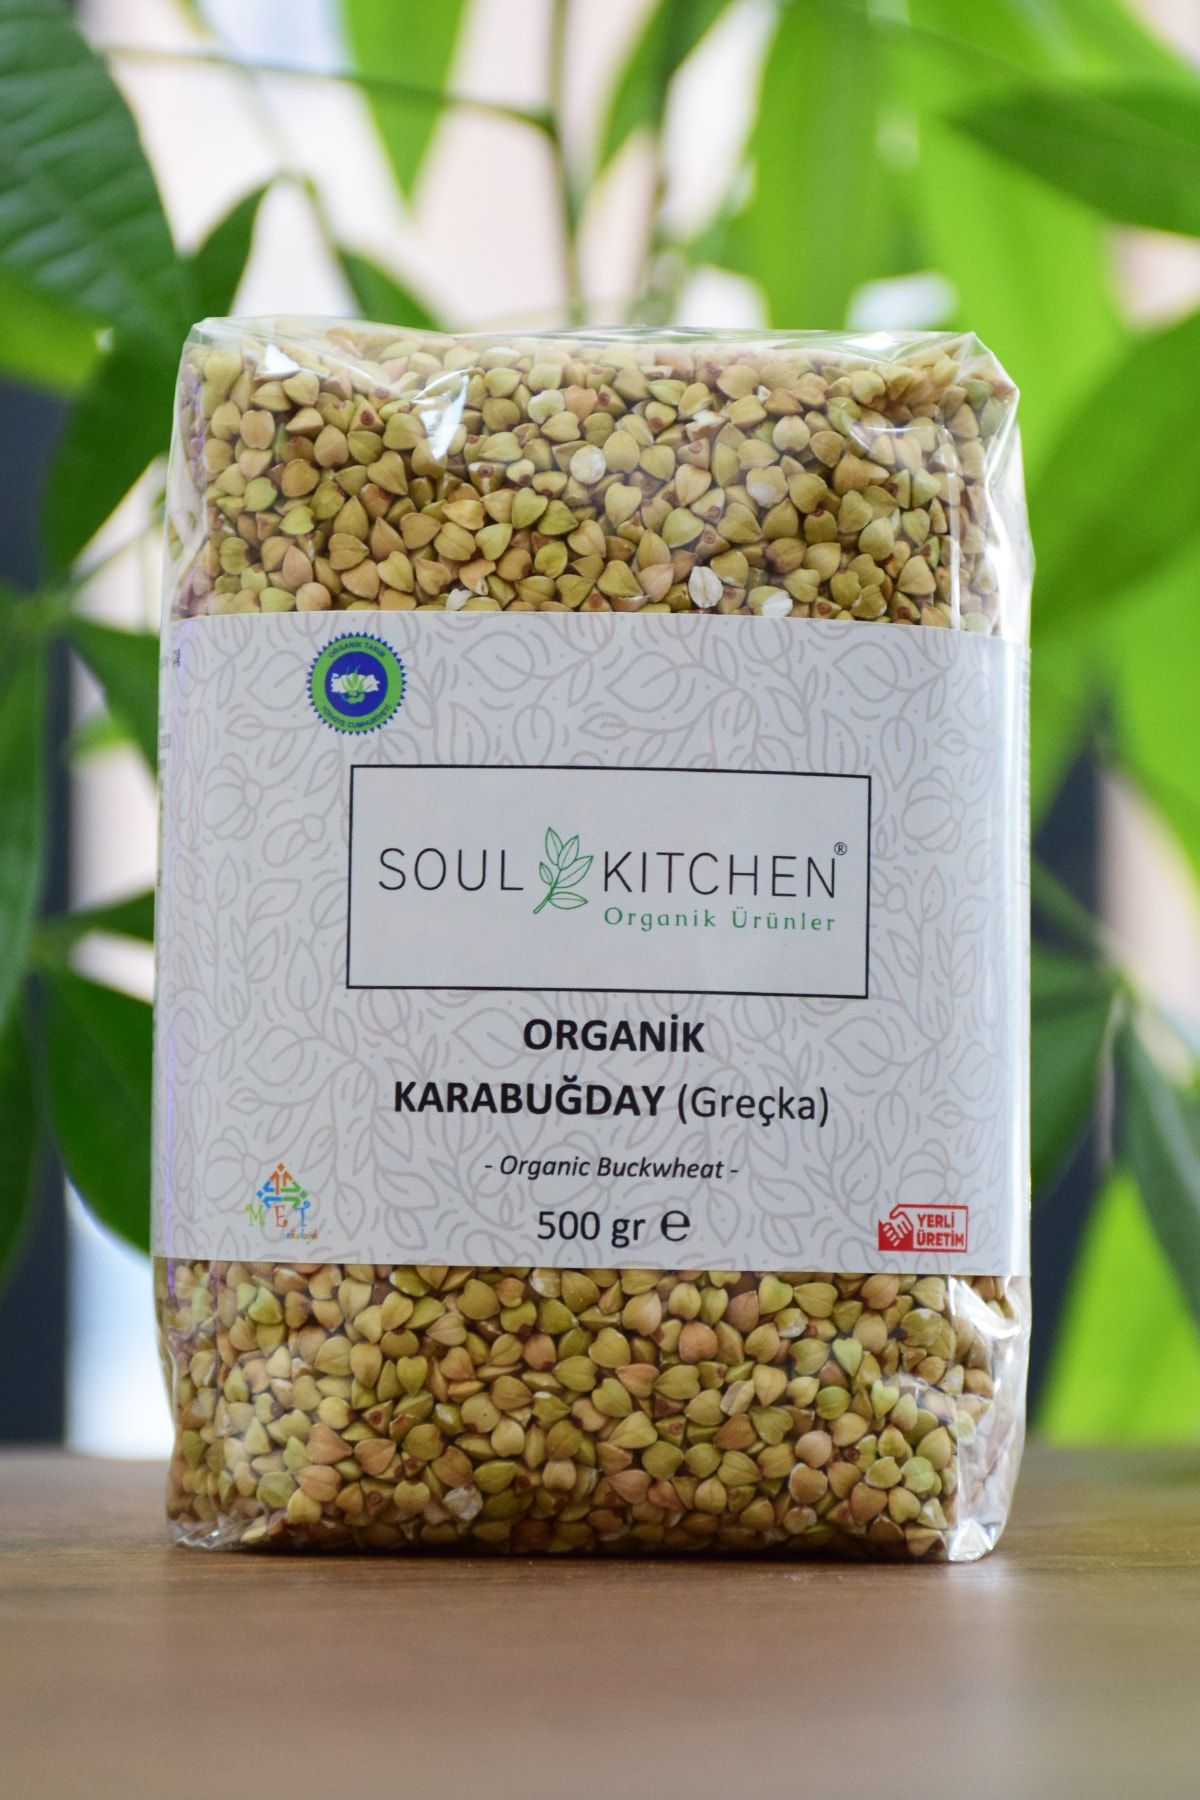 Soul Kitchen Organik Ürünler Organik Karabuğday Greçka 500gr (glutensiz) (çiğ)